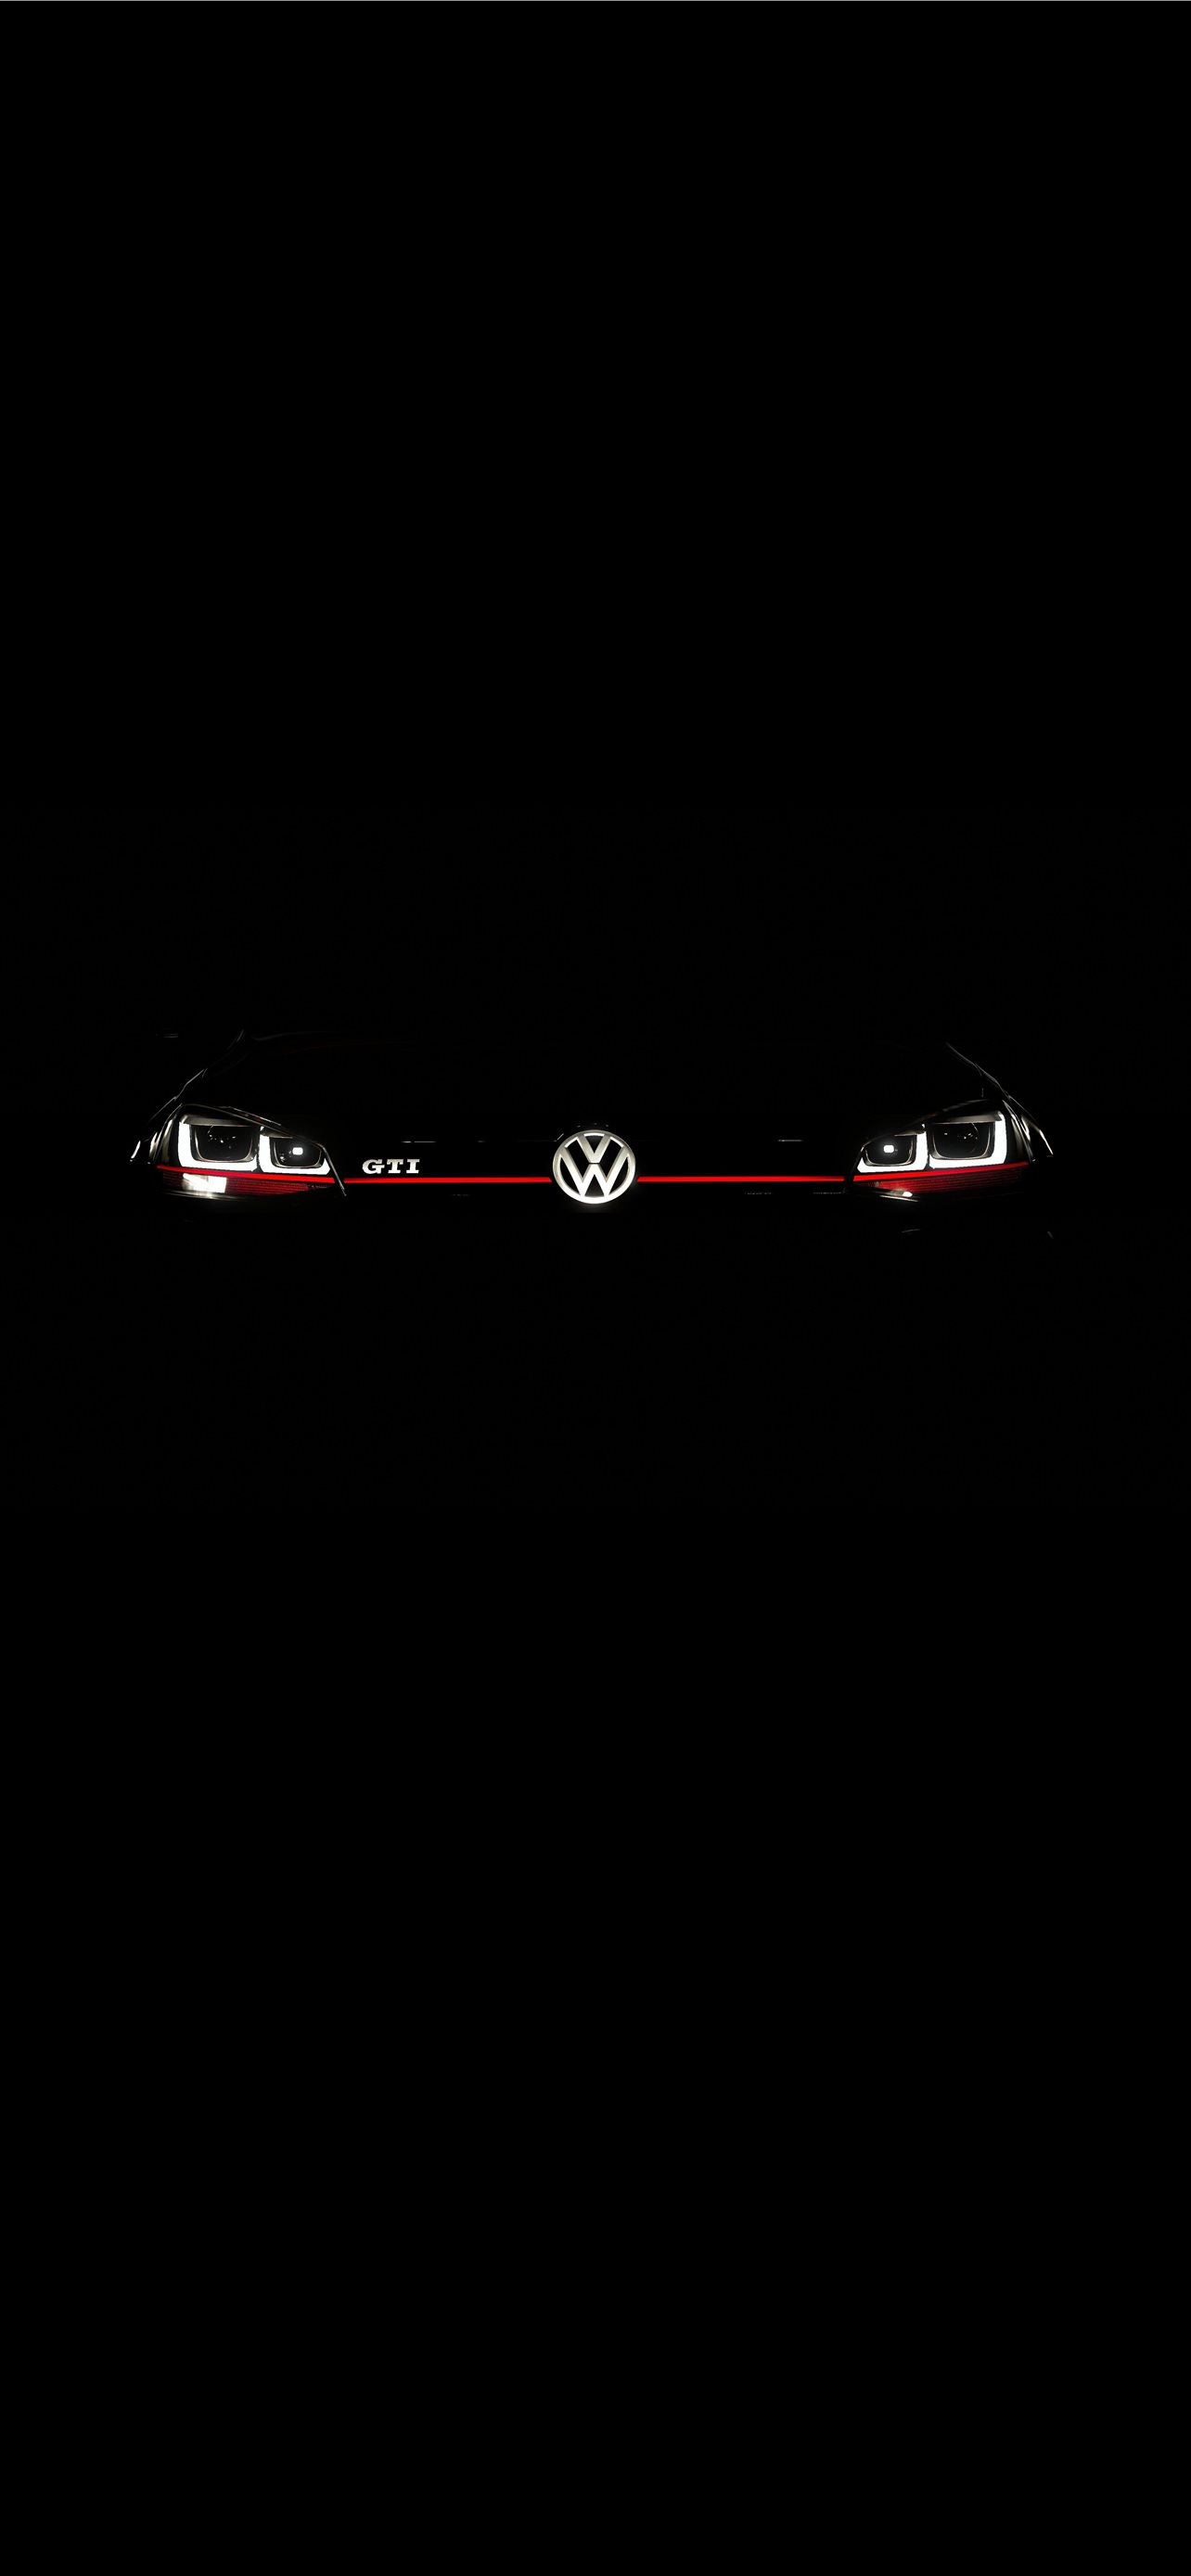 Best Volkswagen Golf R Iphone Hd Wallpapers Ilikewallpaper